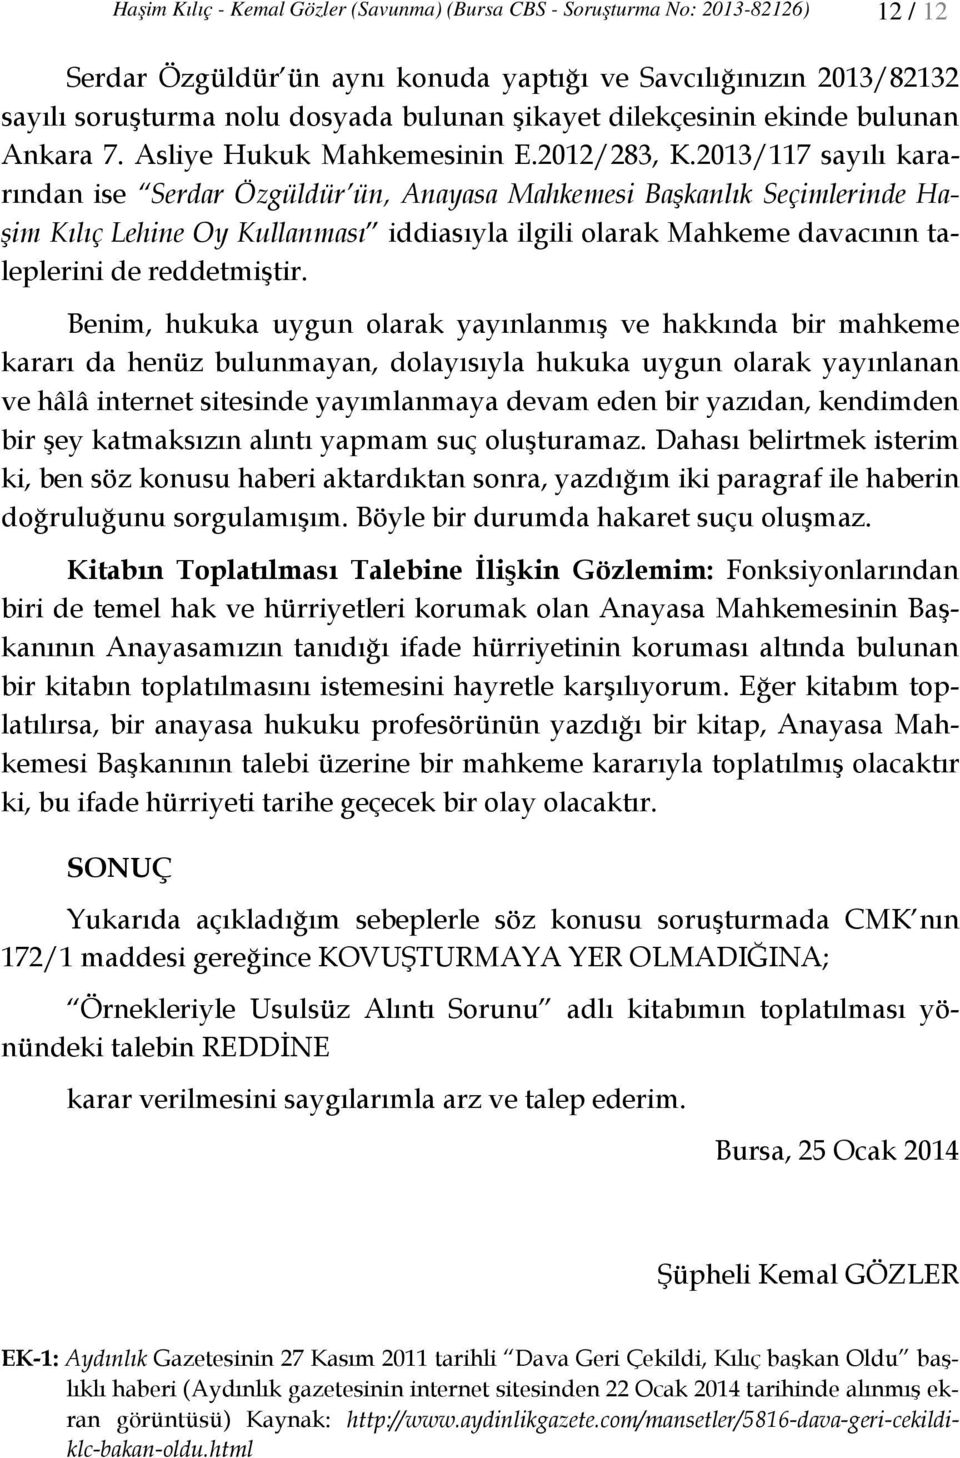 2013/117 sayılı kararından ise Serdar Özgüldür ün, Anayasa Mahkemesi Başkanlık Seçimlerinde Haşim Kılıç Lehine Oy Kullanması iddiasıyla ilgili olarak Mahkeme davacının taleplerini de reddetmiştir.